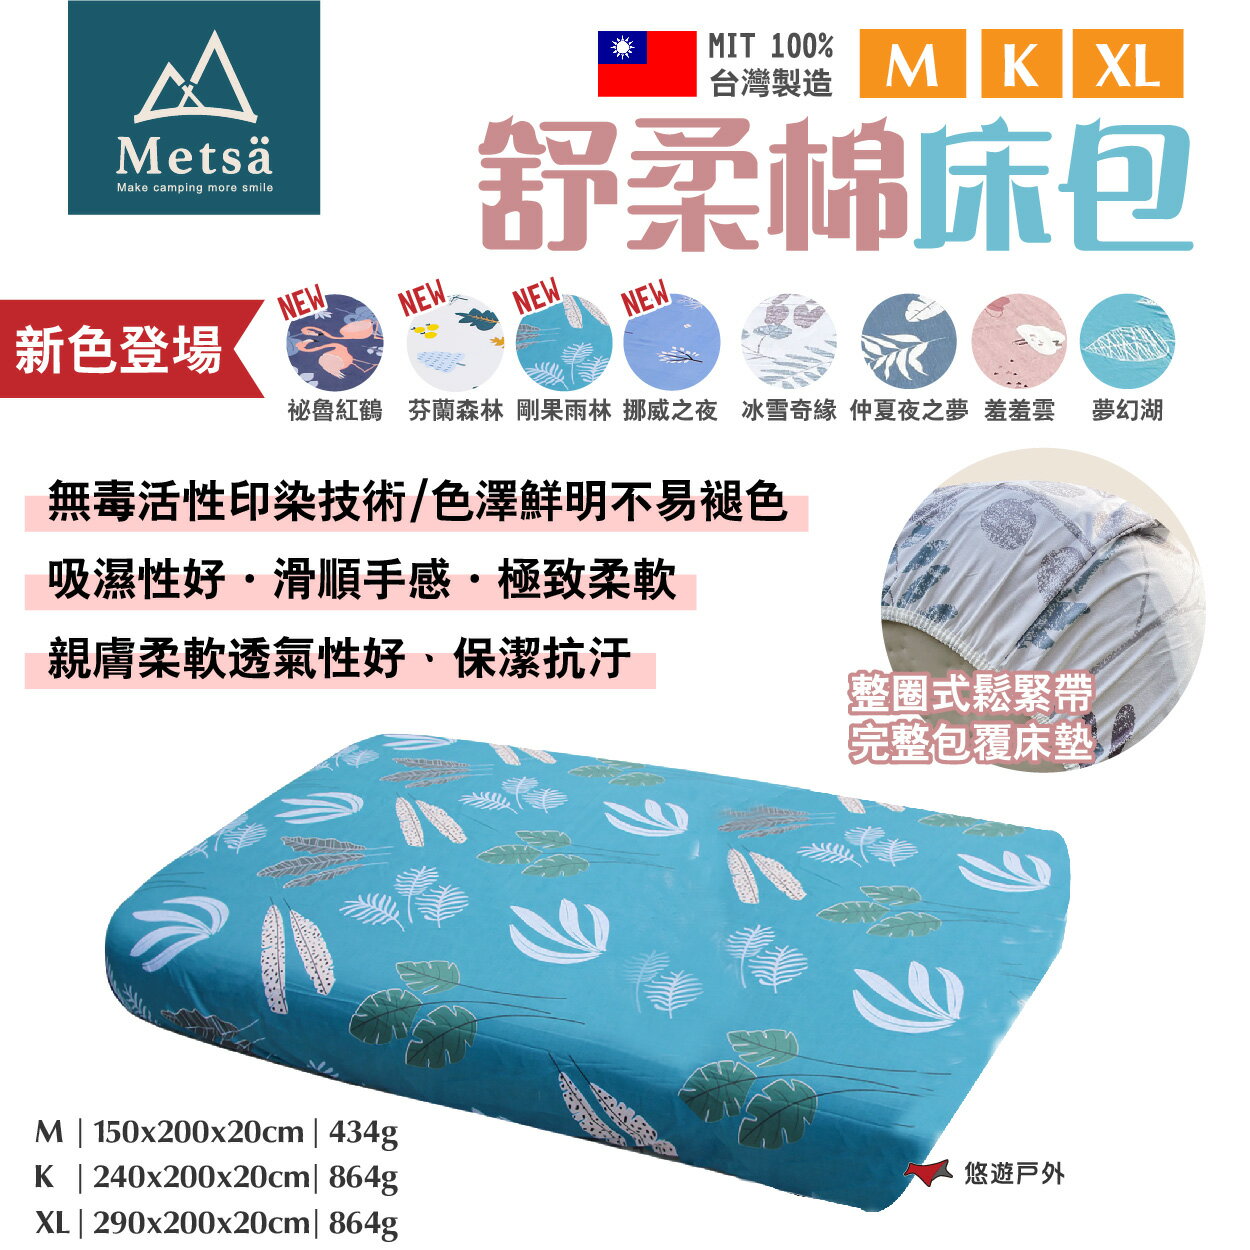 【Metsa米特薩】舒柔棉床包 M/K/XL 多色 MIT台灣製 親膚透氣 無毒印染 適用市售充氣床 露營 悠遊戶外